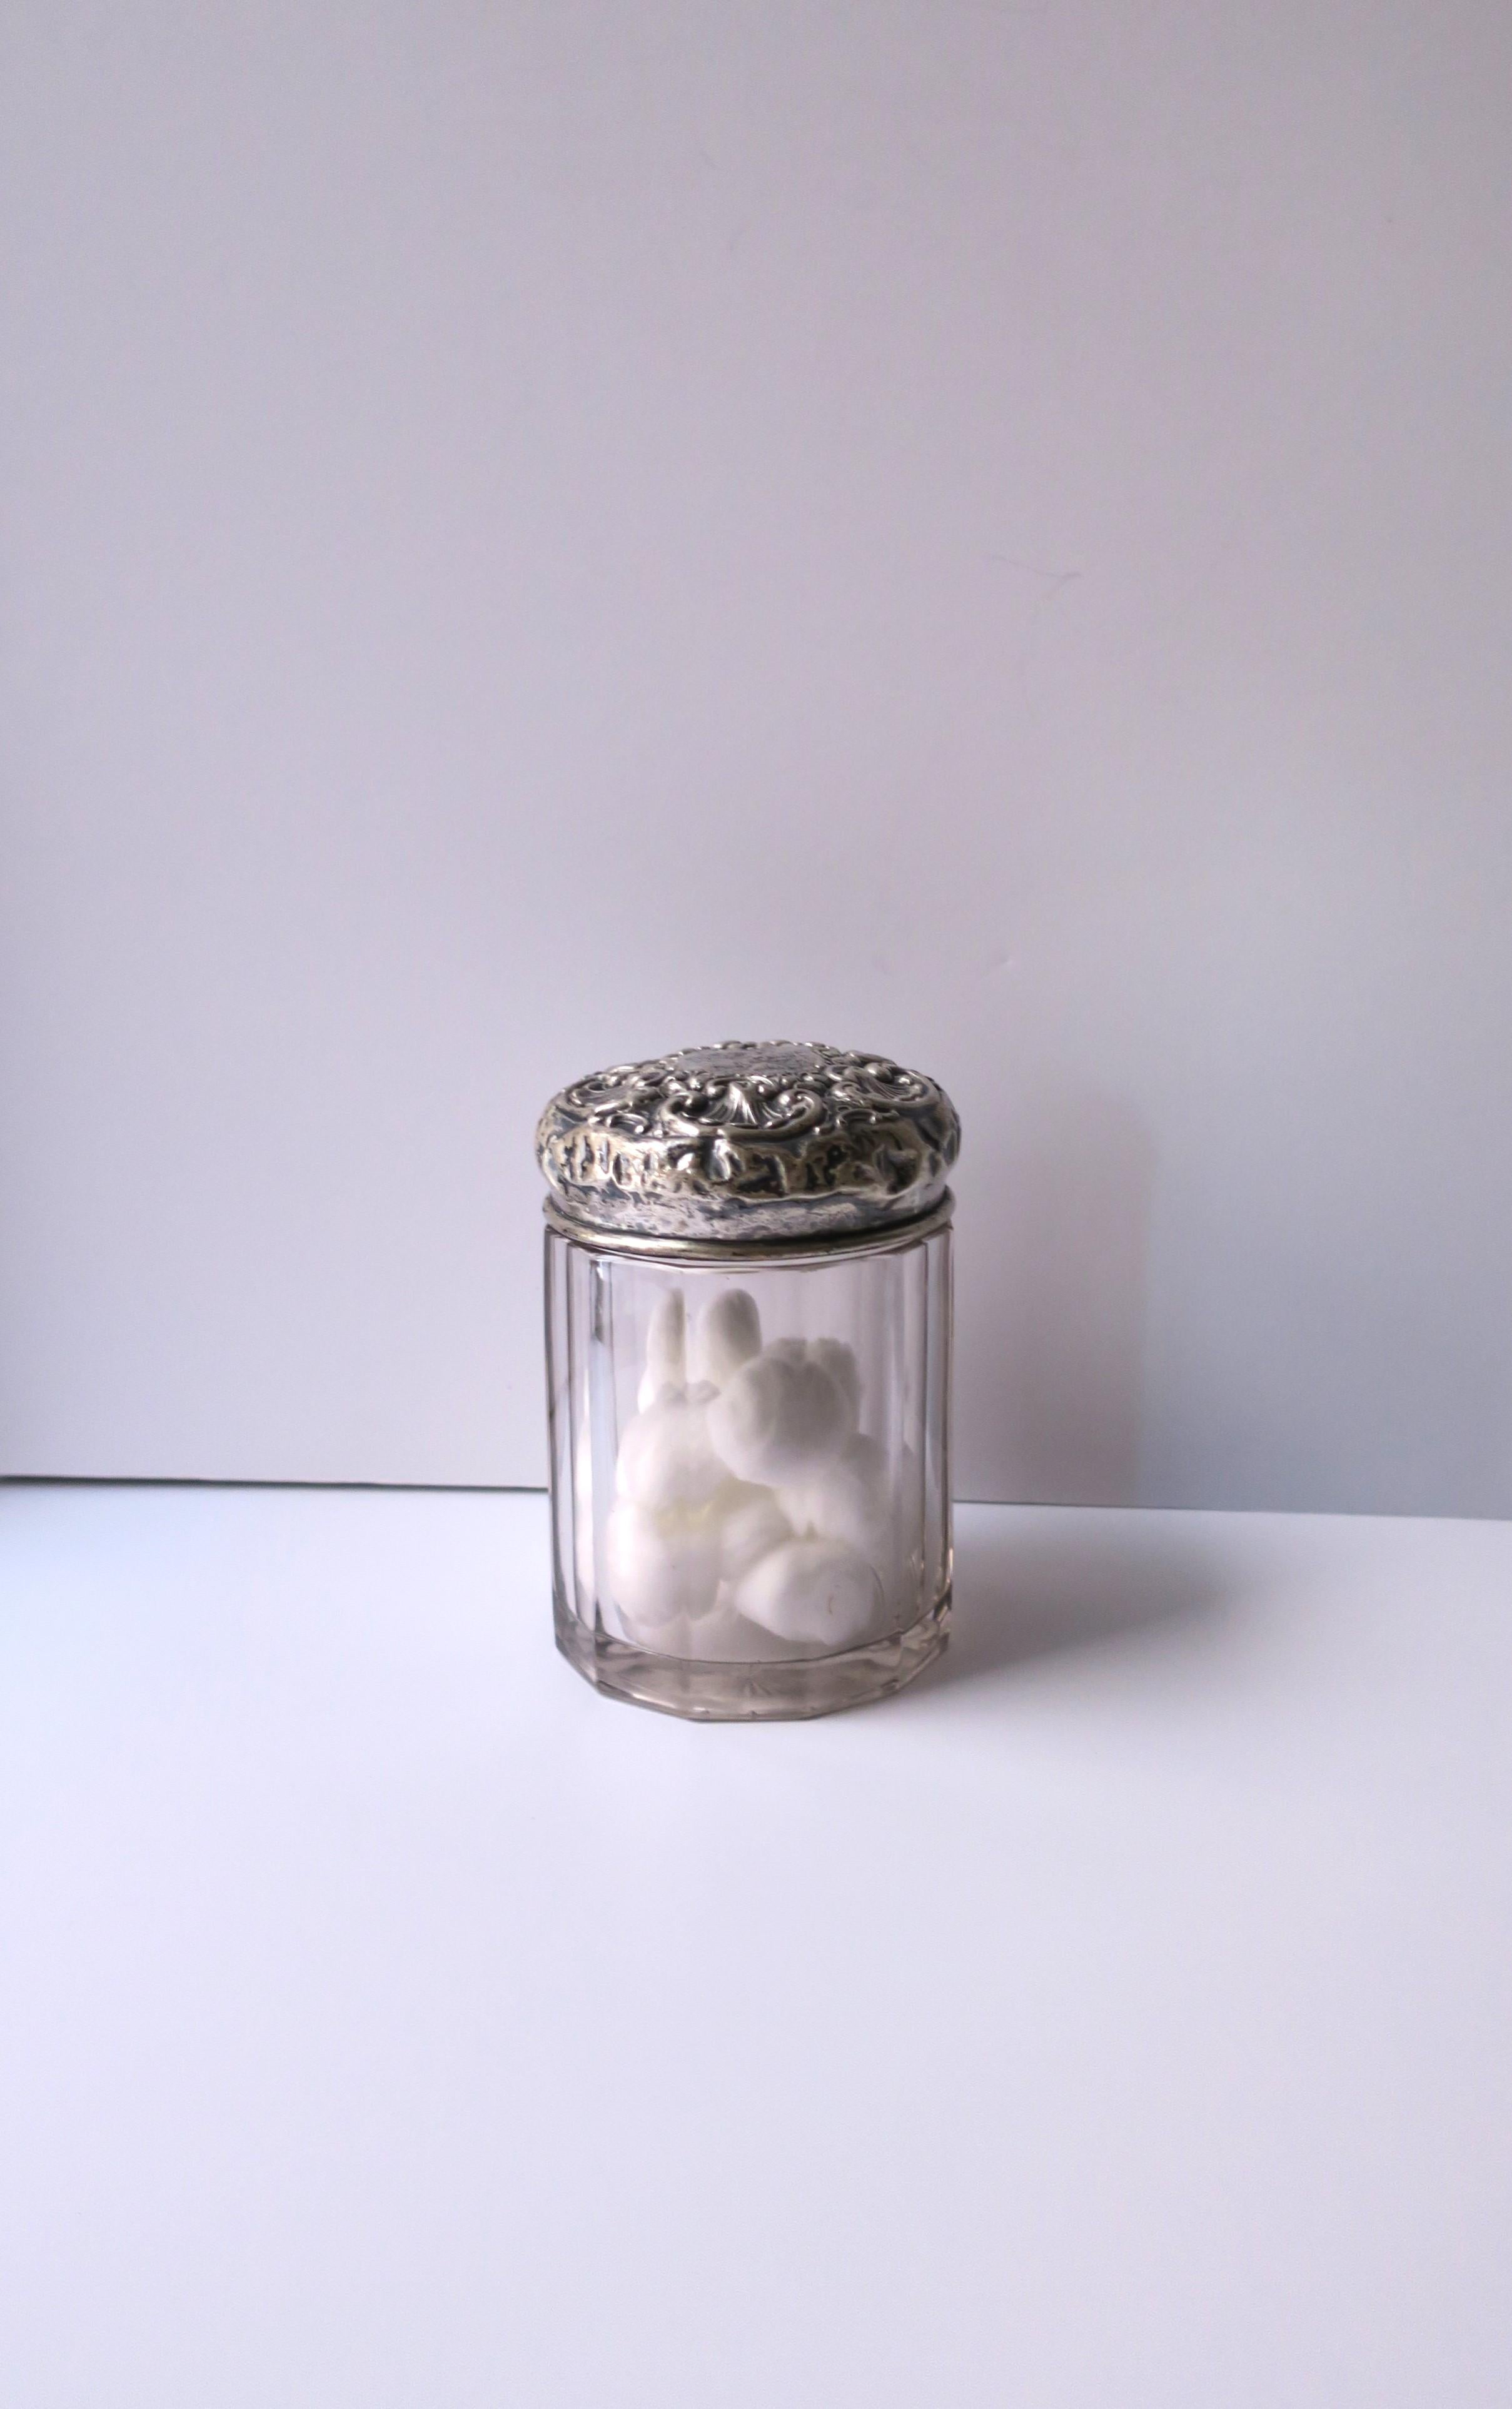 Ein Eitelkeits- oder Kommodenglas aus Sterlingsilber und Kristall, viktorianische Periode, ca. Ende des 19. Jahrhunderts. Der Sterling-Deckel hat ein florales Design, ein Monogramm in der Mitte, einen getäfelten Körper und einen geschliffenen